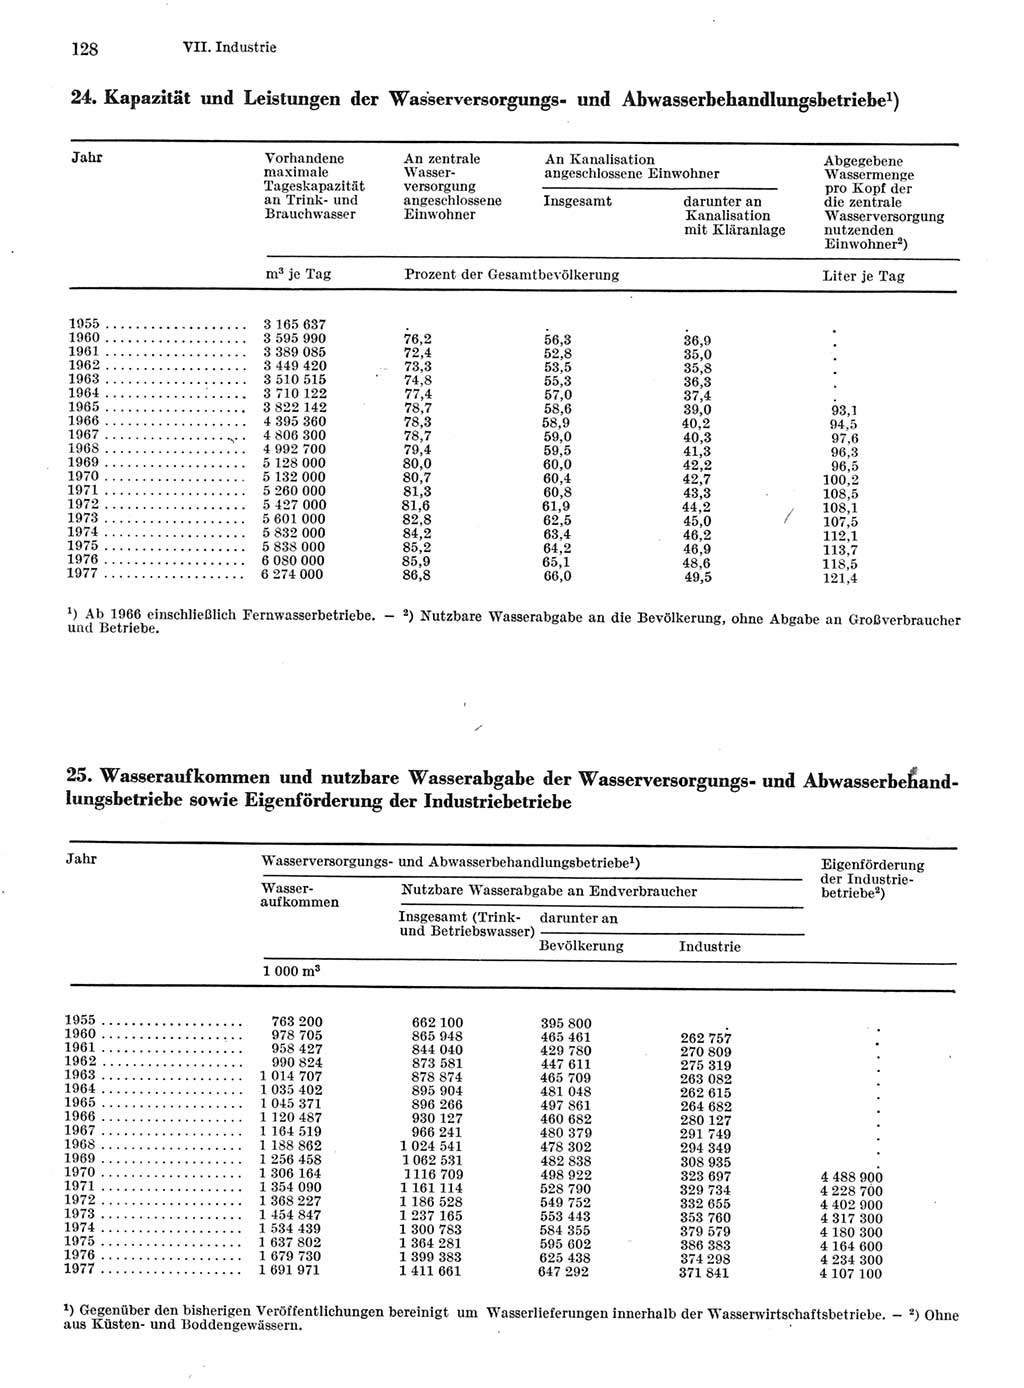 Statistisches Jahrbuch der Deutschen Demokratischen Republik (DDR) 1978, Seite 128 (Stat. Jb. DDR 1978, S. 128)